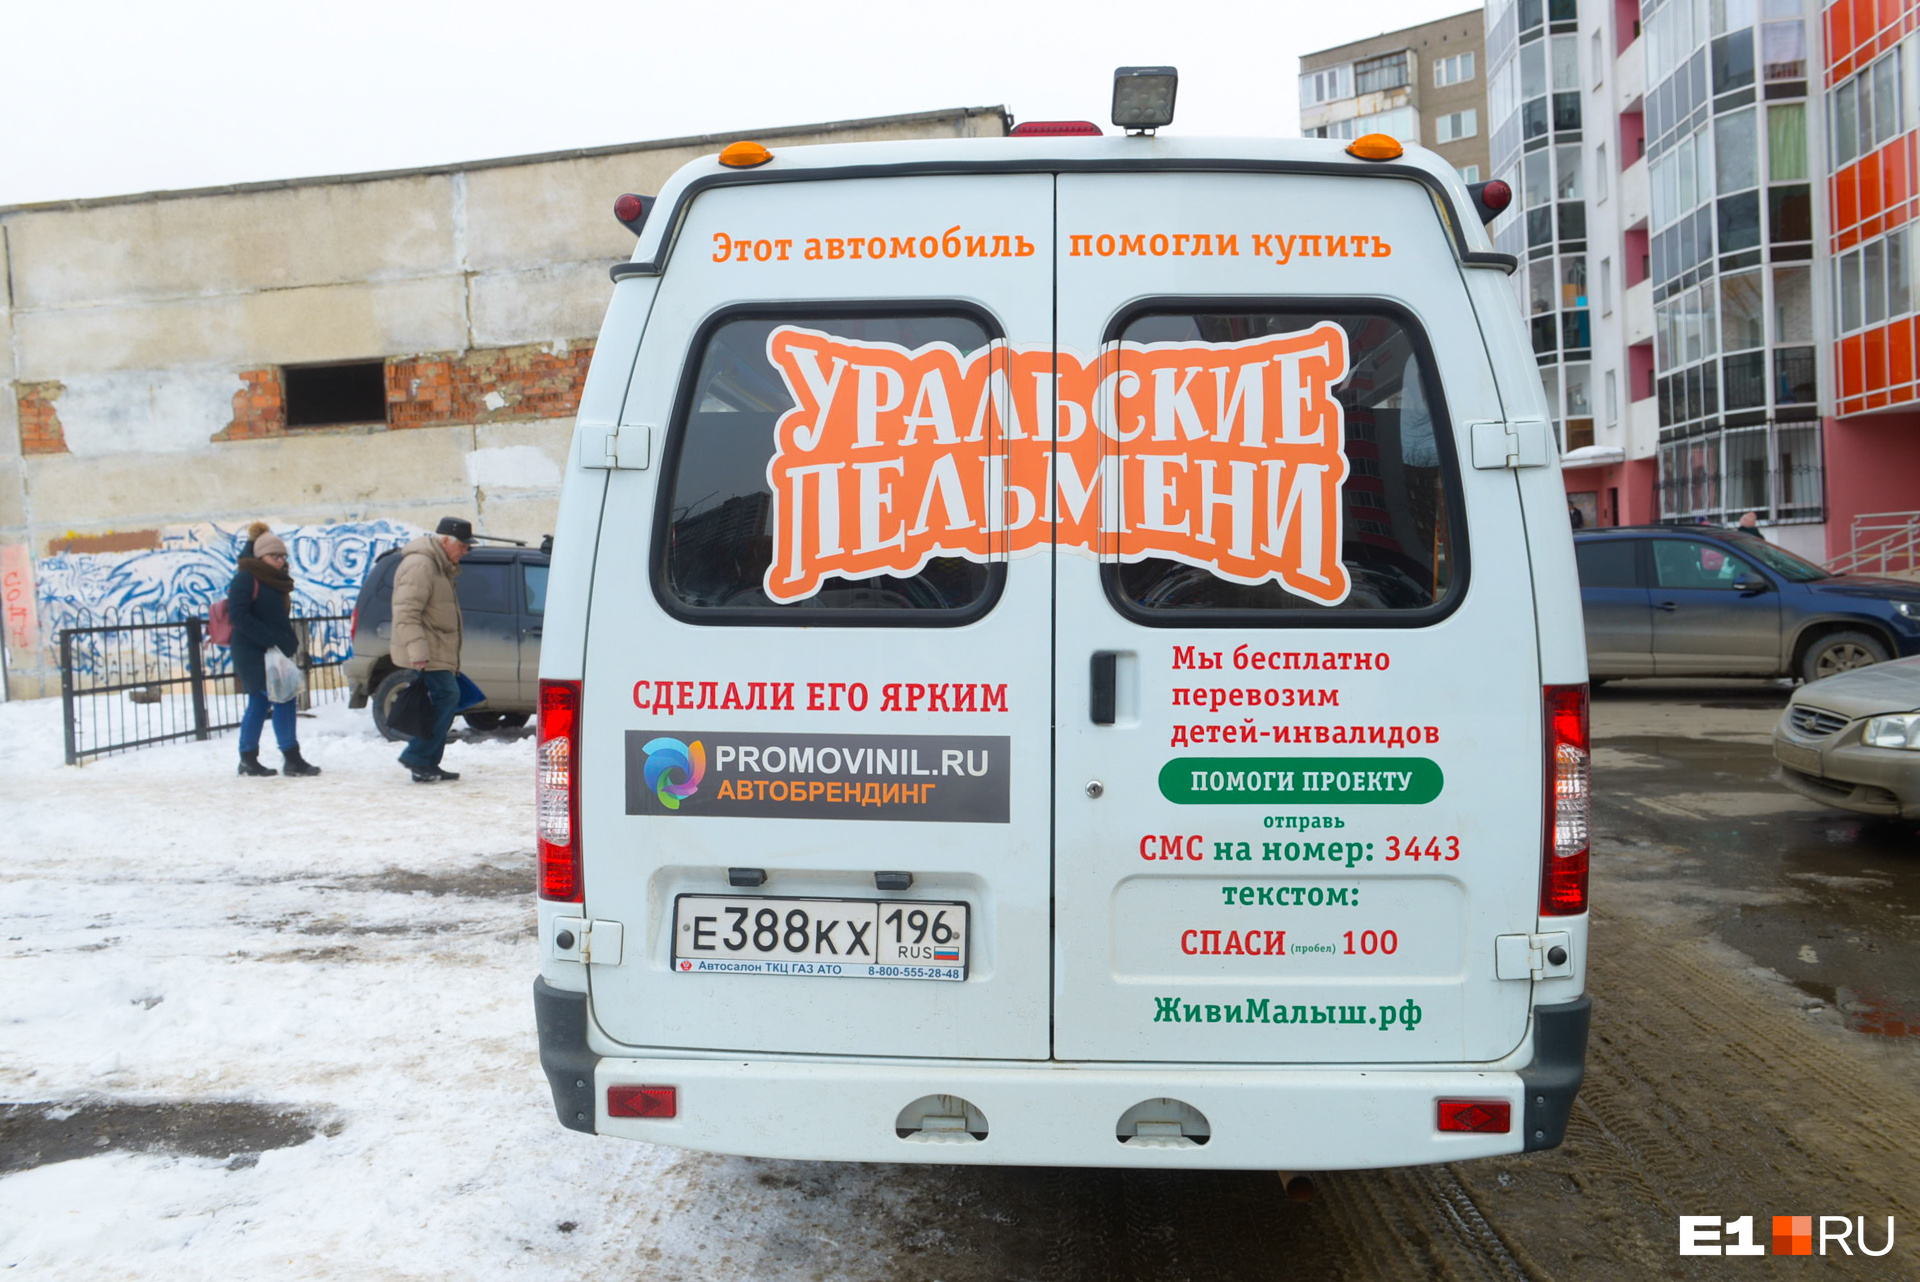 «Уральские пельмени» пожертвовали на покупку автобуса миллион рублей